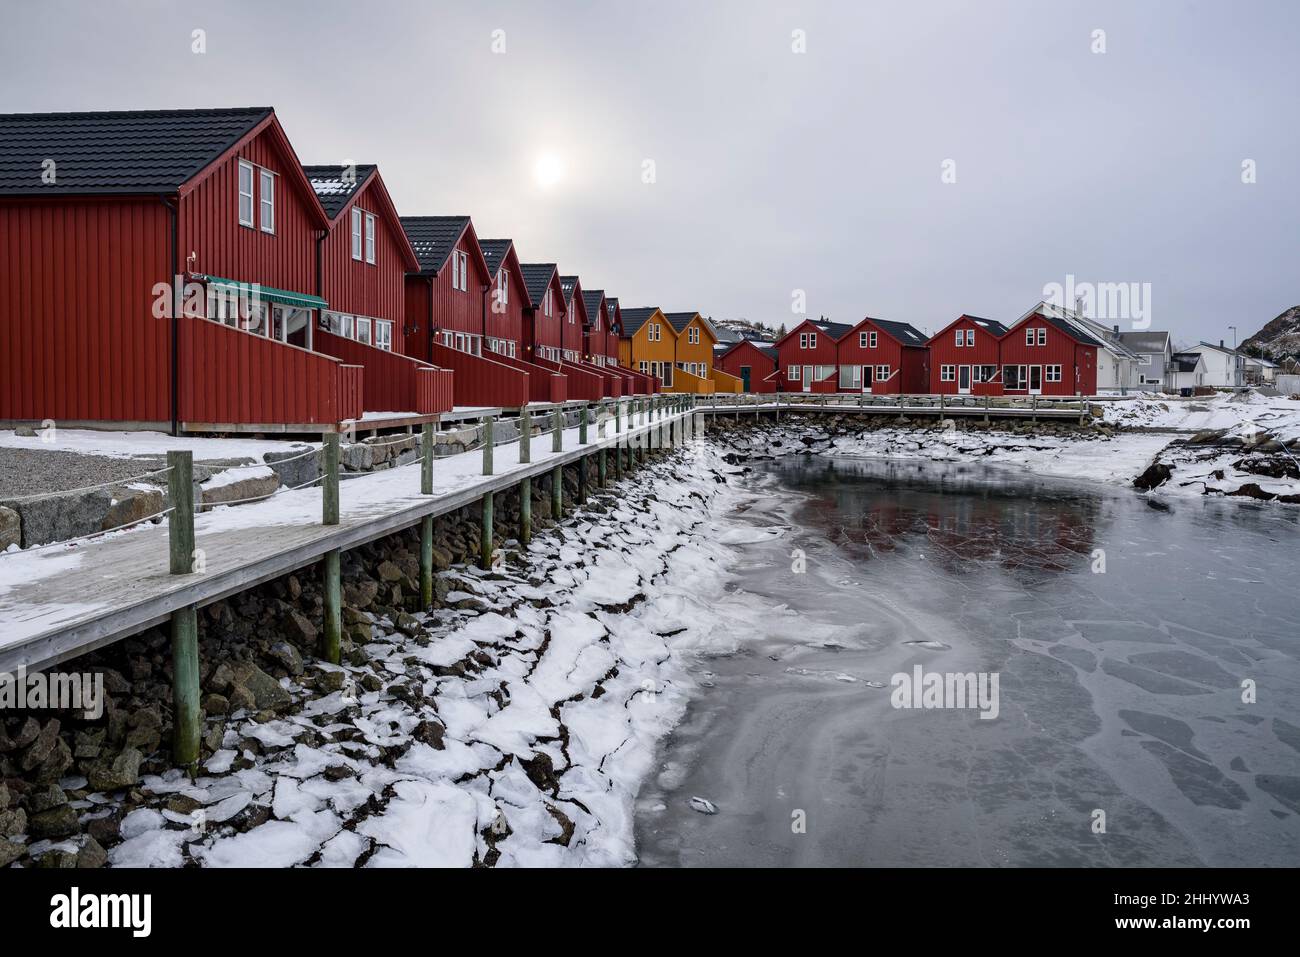 Villaggio e porto di Ballstad in inverno (Moskenes, Lofoten, Norvegia) ESP: Pueblo y puerto de Ballstad en invierno (Moskenes, Moskenesøya, Lofoten, Noruega) Foto Stock